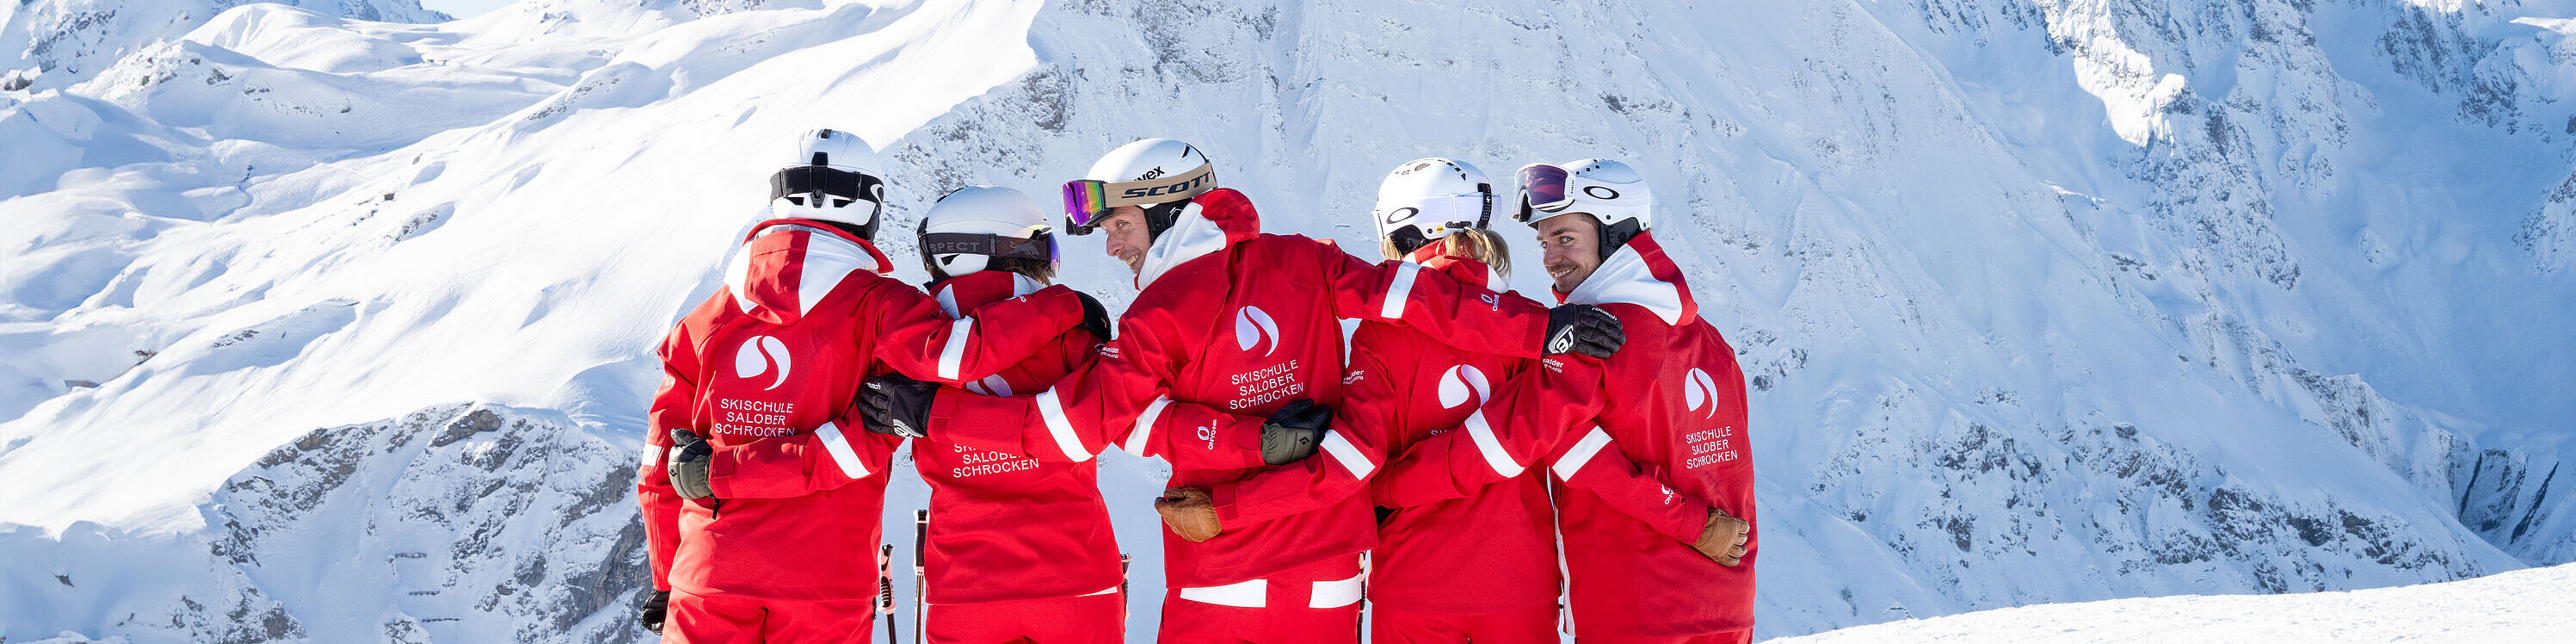 Een groep skileraren staat arm in arm met hun rug naar de camera